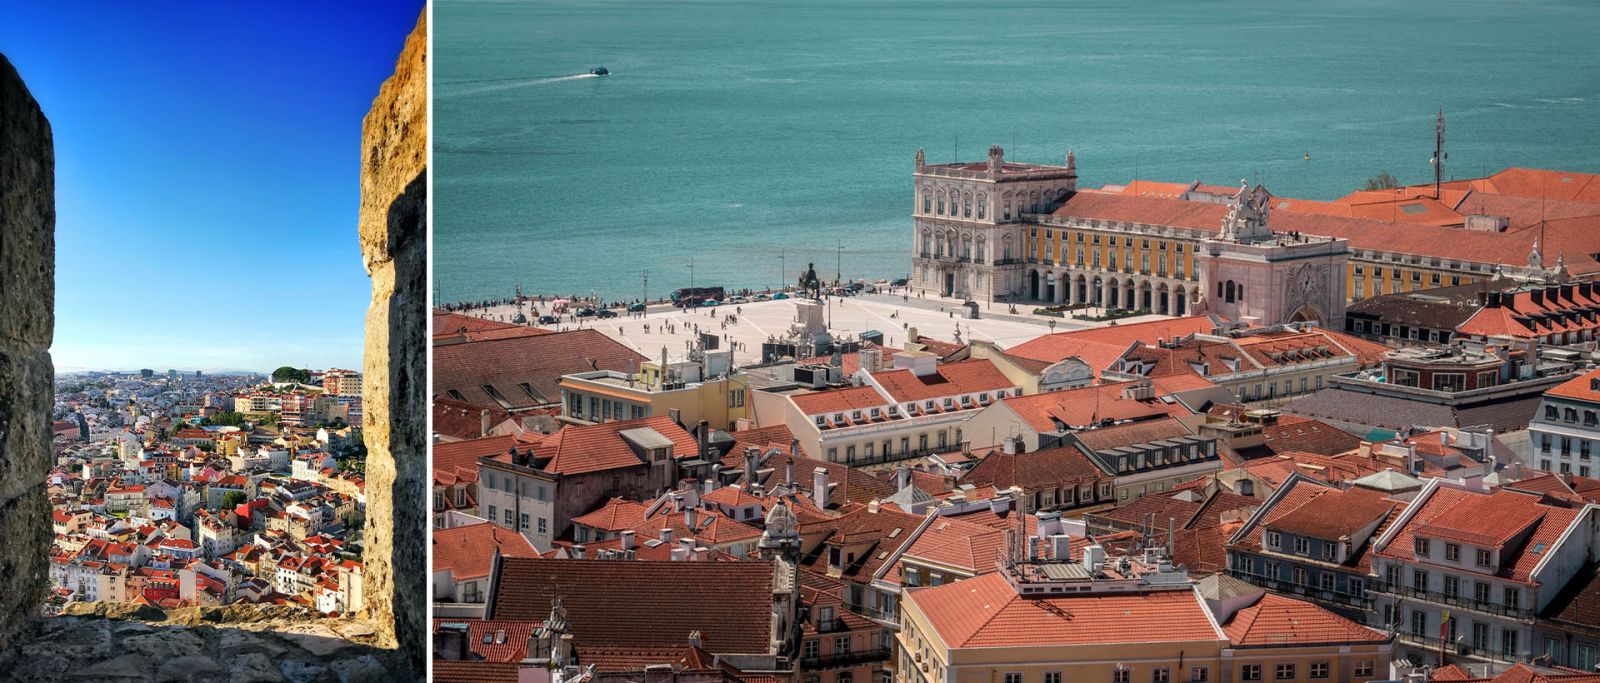 Views from Castelo de São Jorge